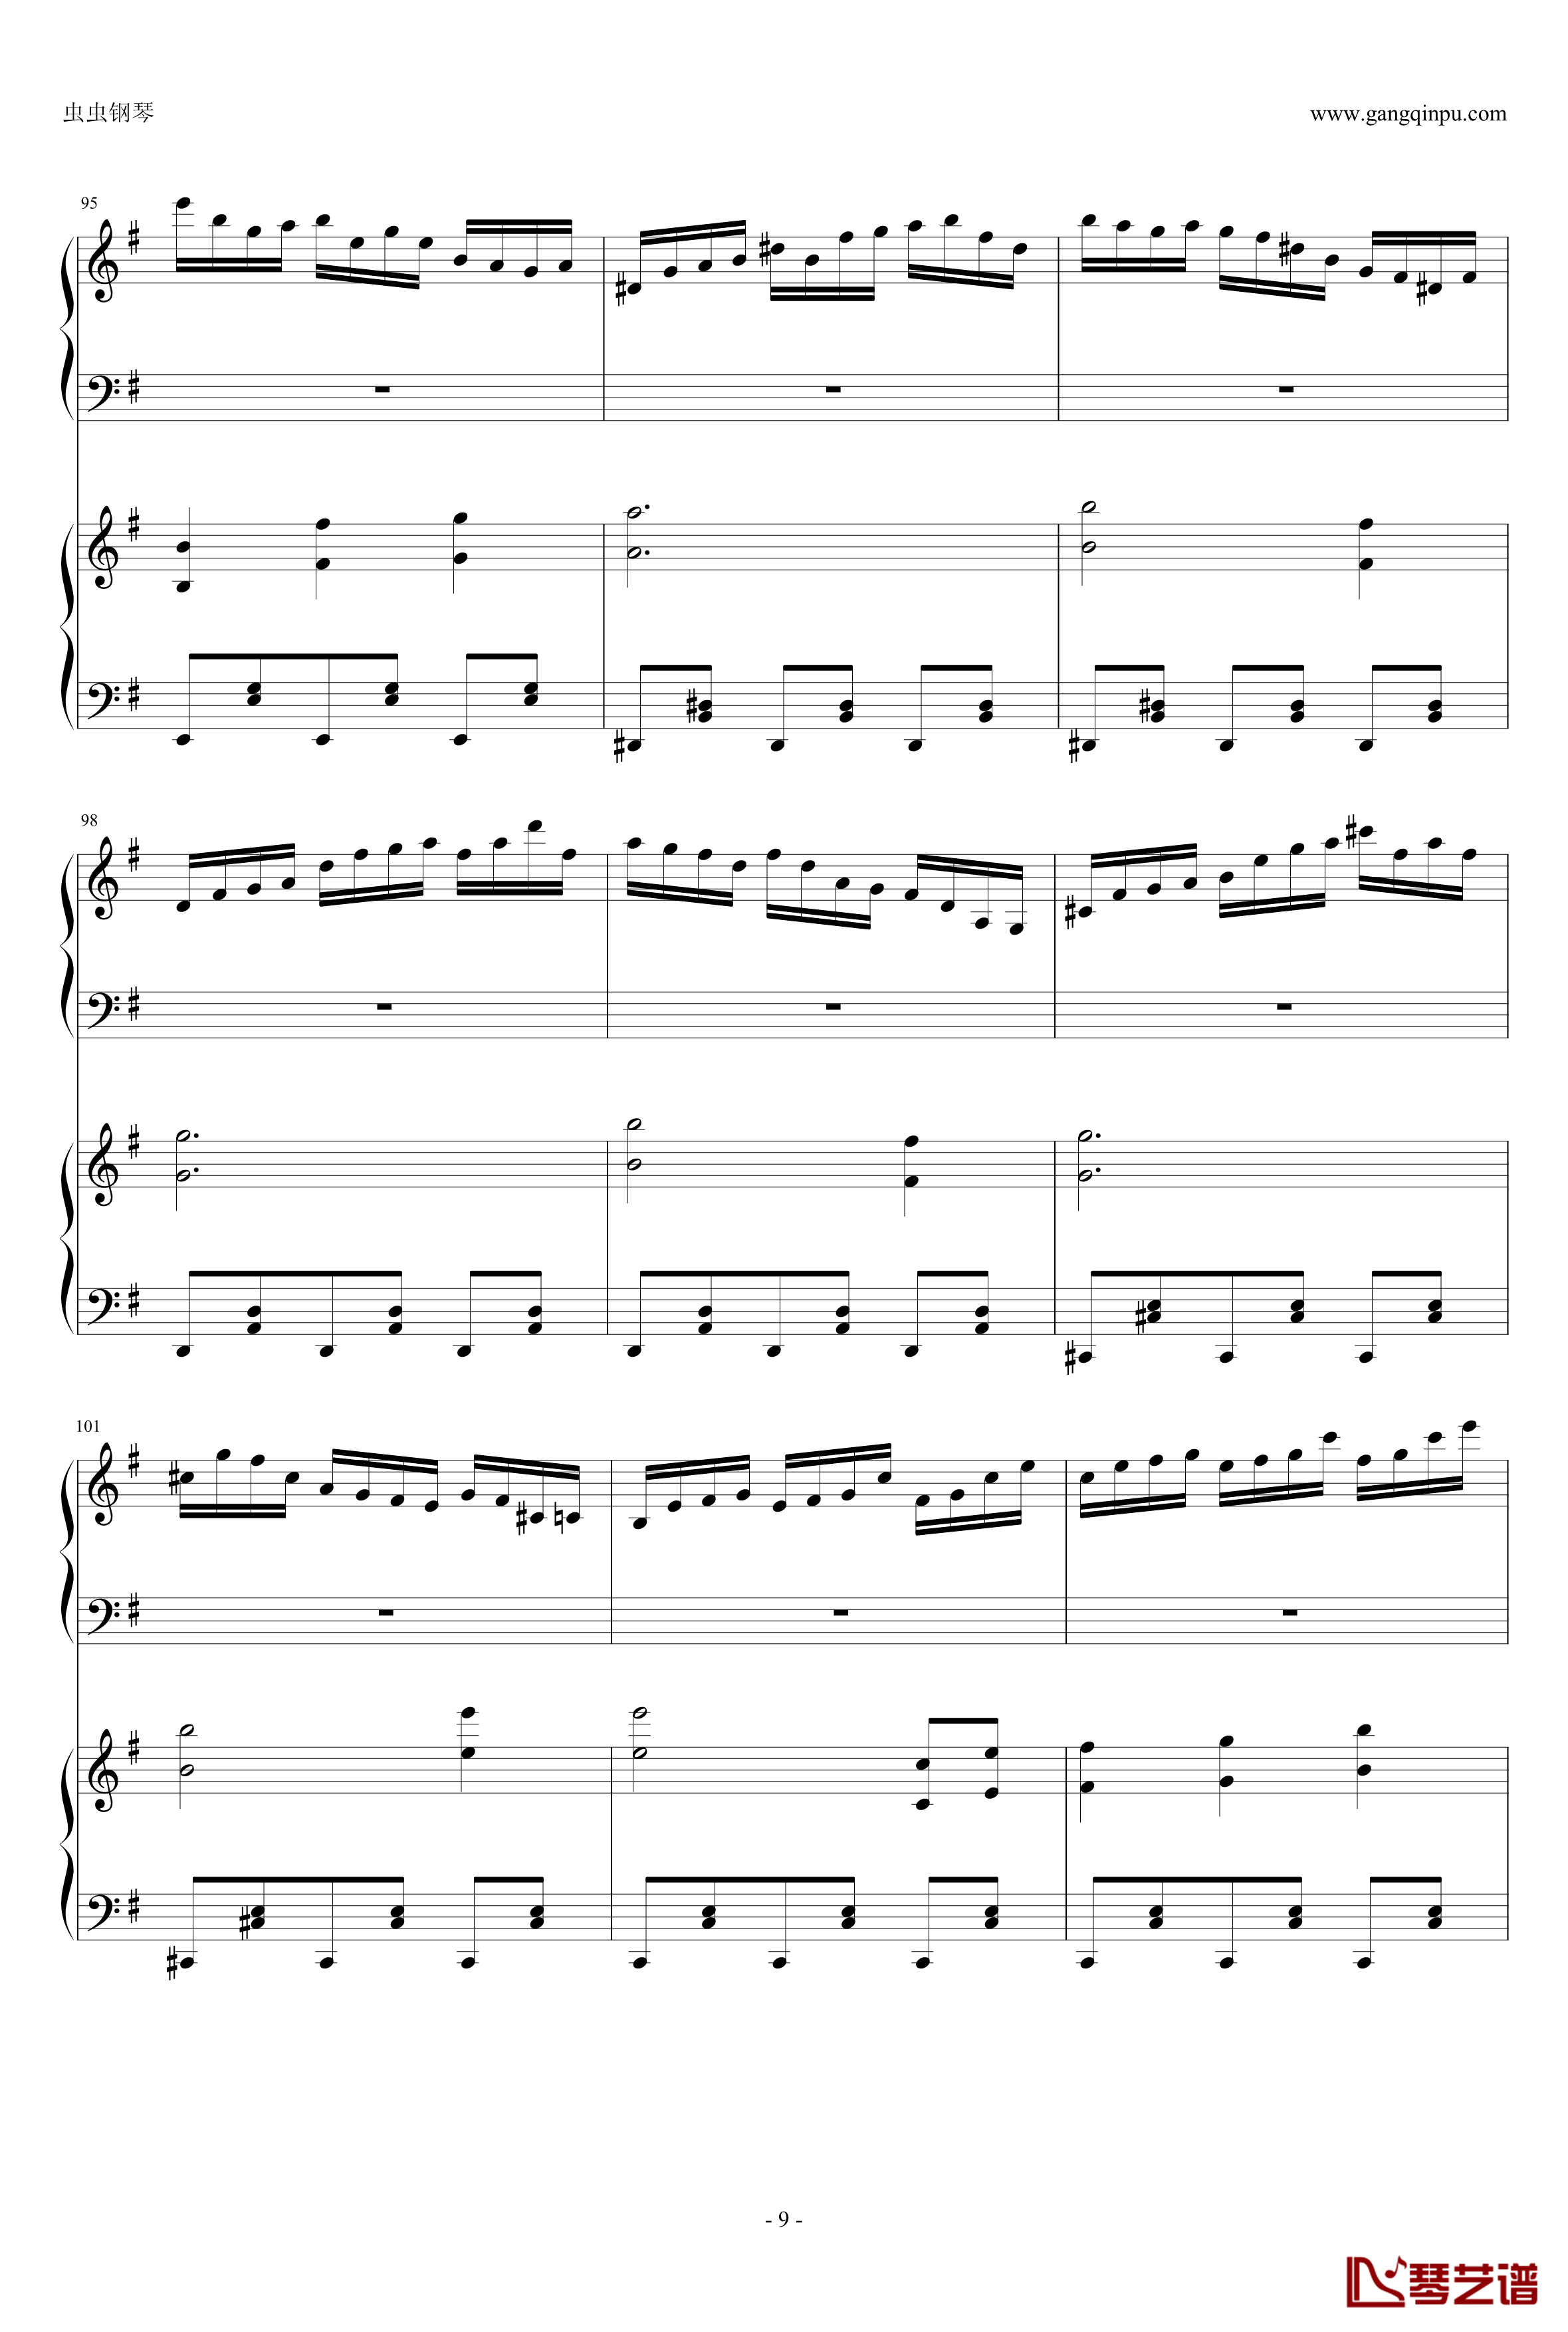 東方連奏曲II Pianoforte钢琴谱-第一部分-东方project9